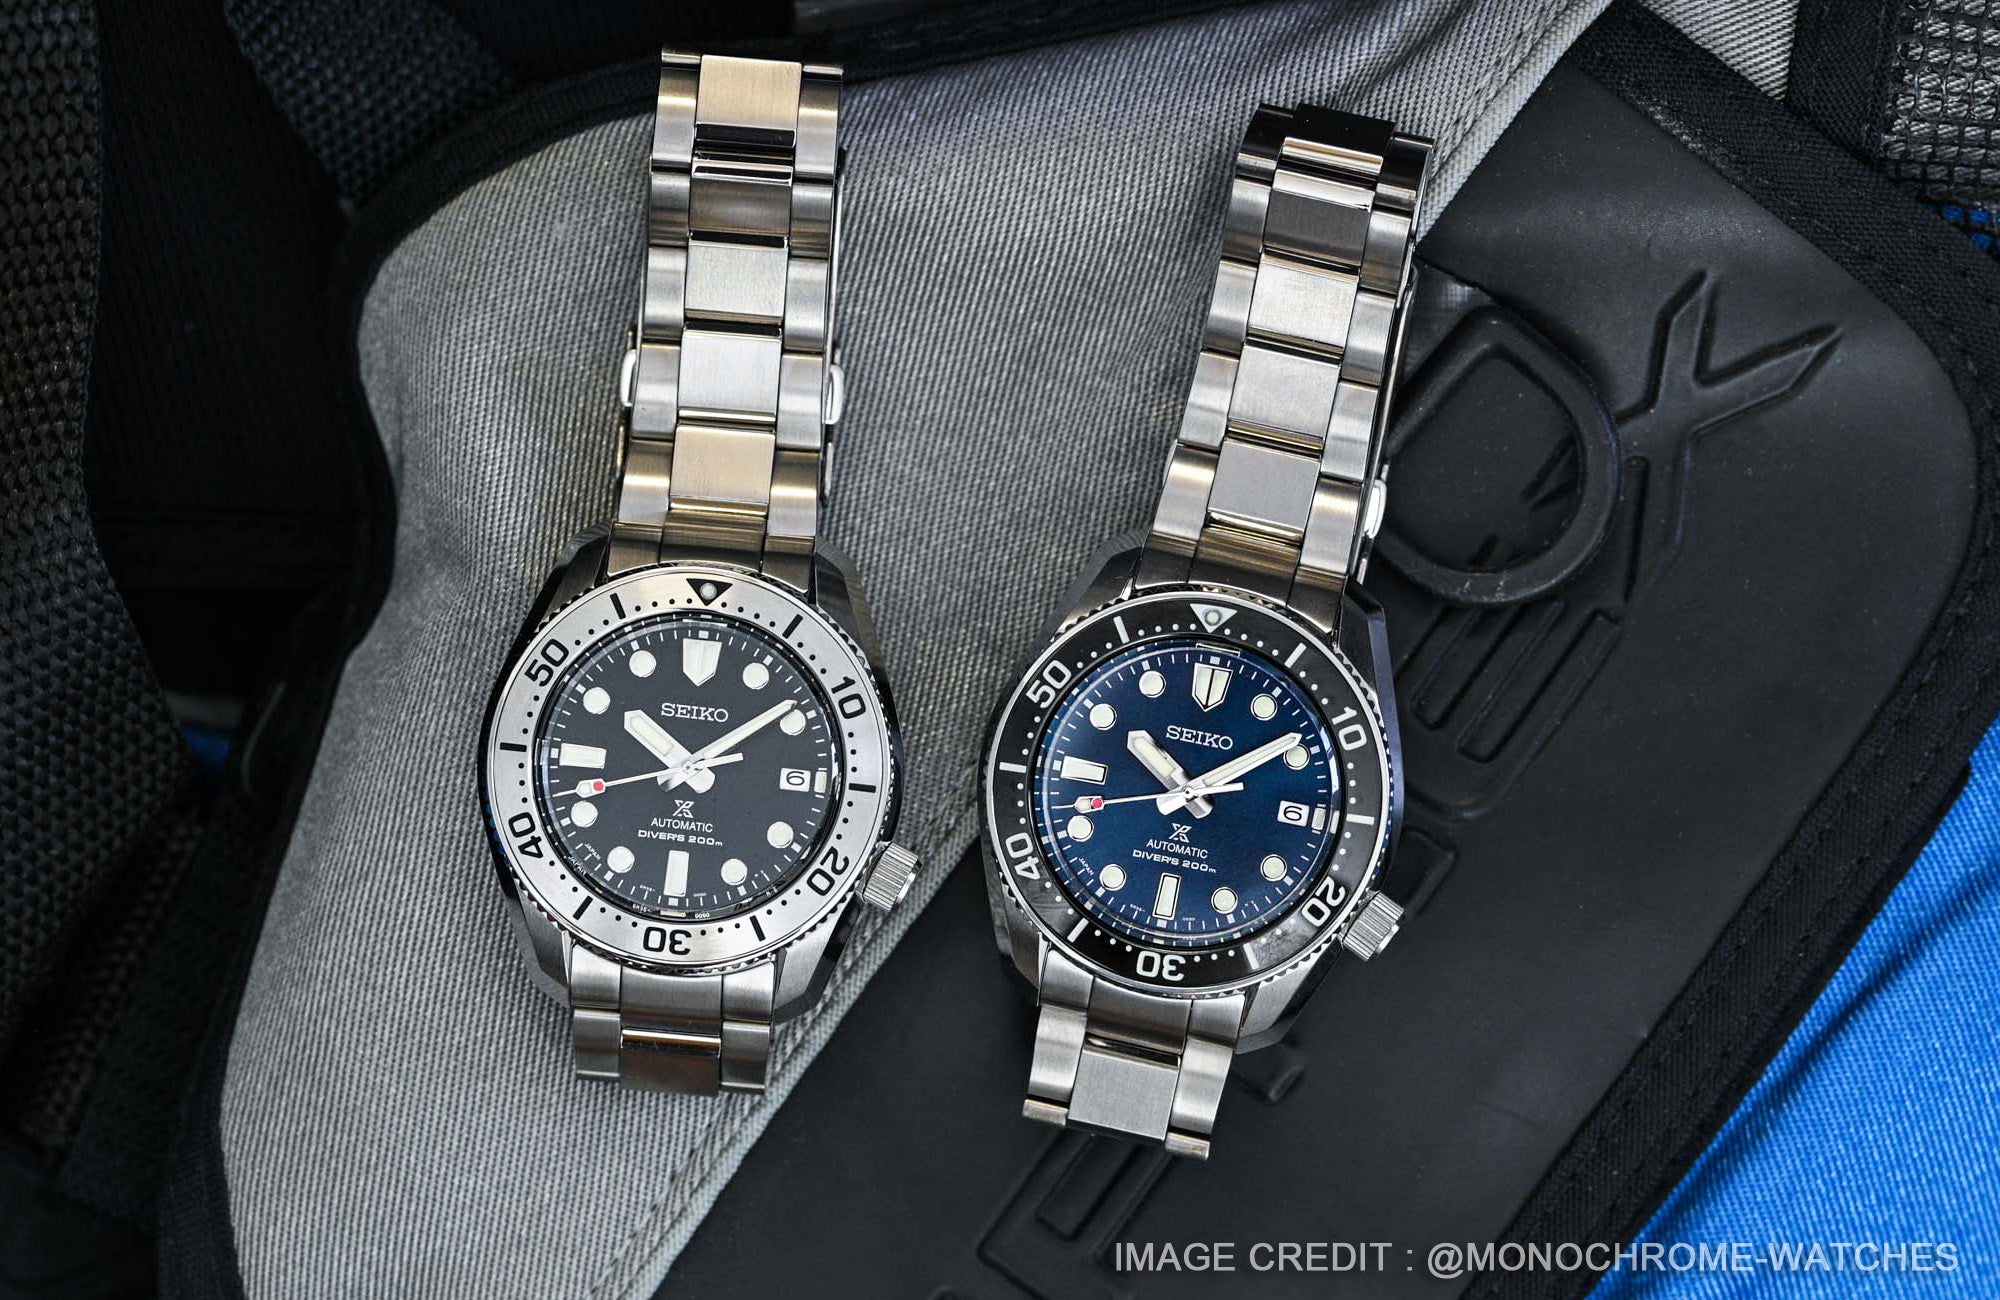 Seiko精工對其經典的1968年潛水腕錶進行現代復刻的SPB185和SPB187以傳統設計向過去致敬。